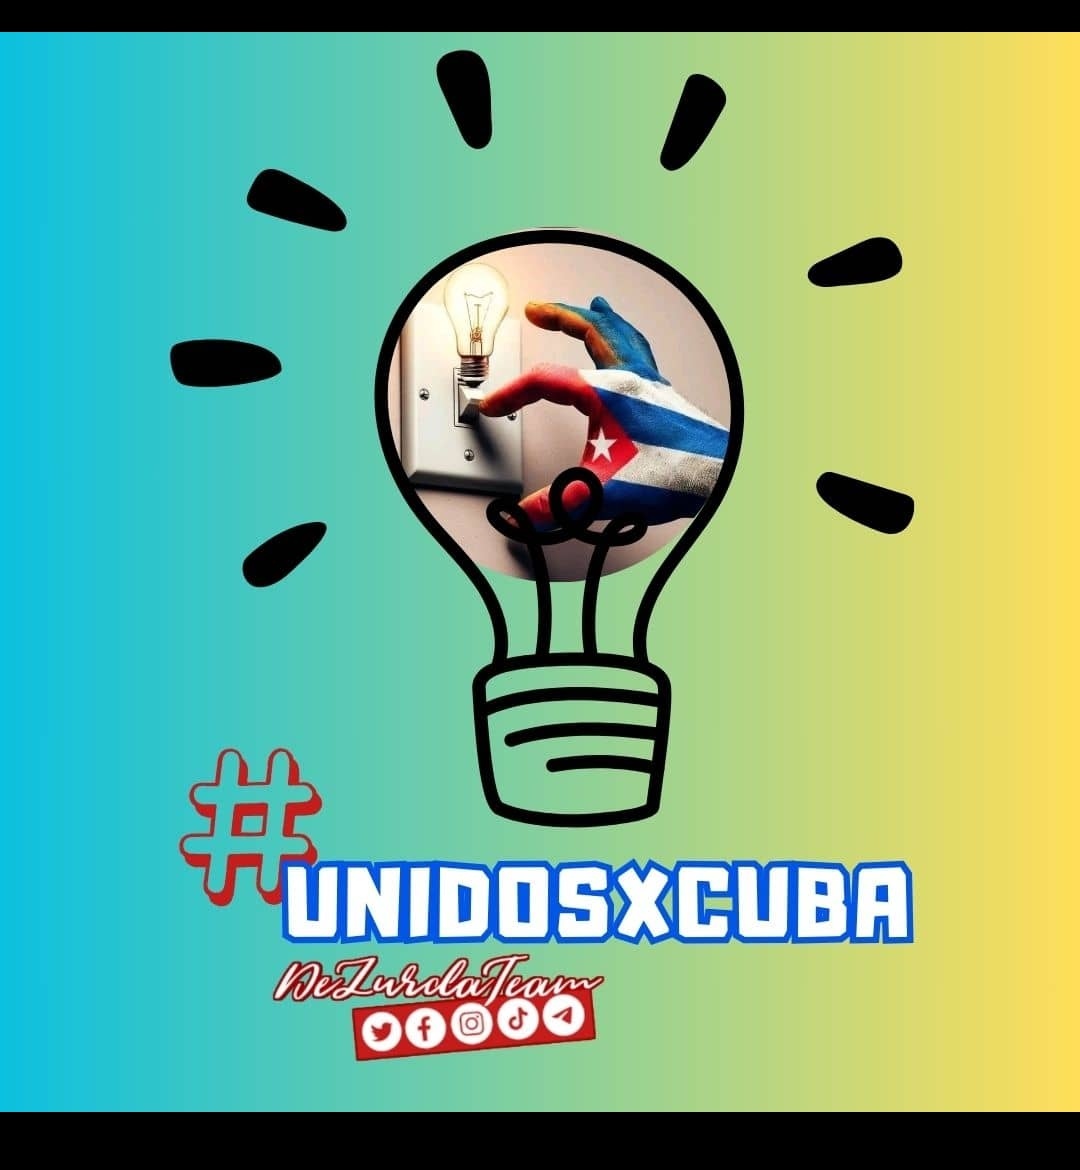 #UnidosXCuba en la batalla del ahorro energético. Desde lo individual podemos crear una conciencia colectiva #CubaCoopera